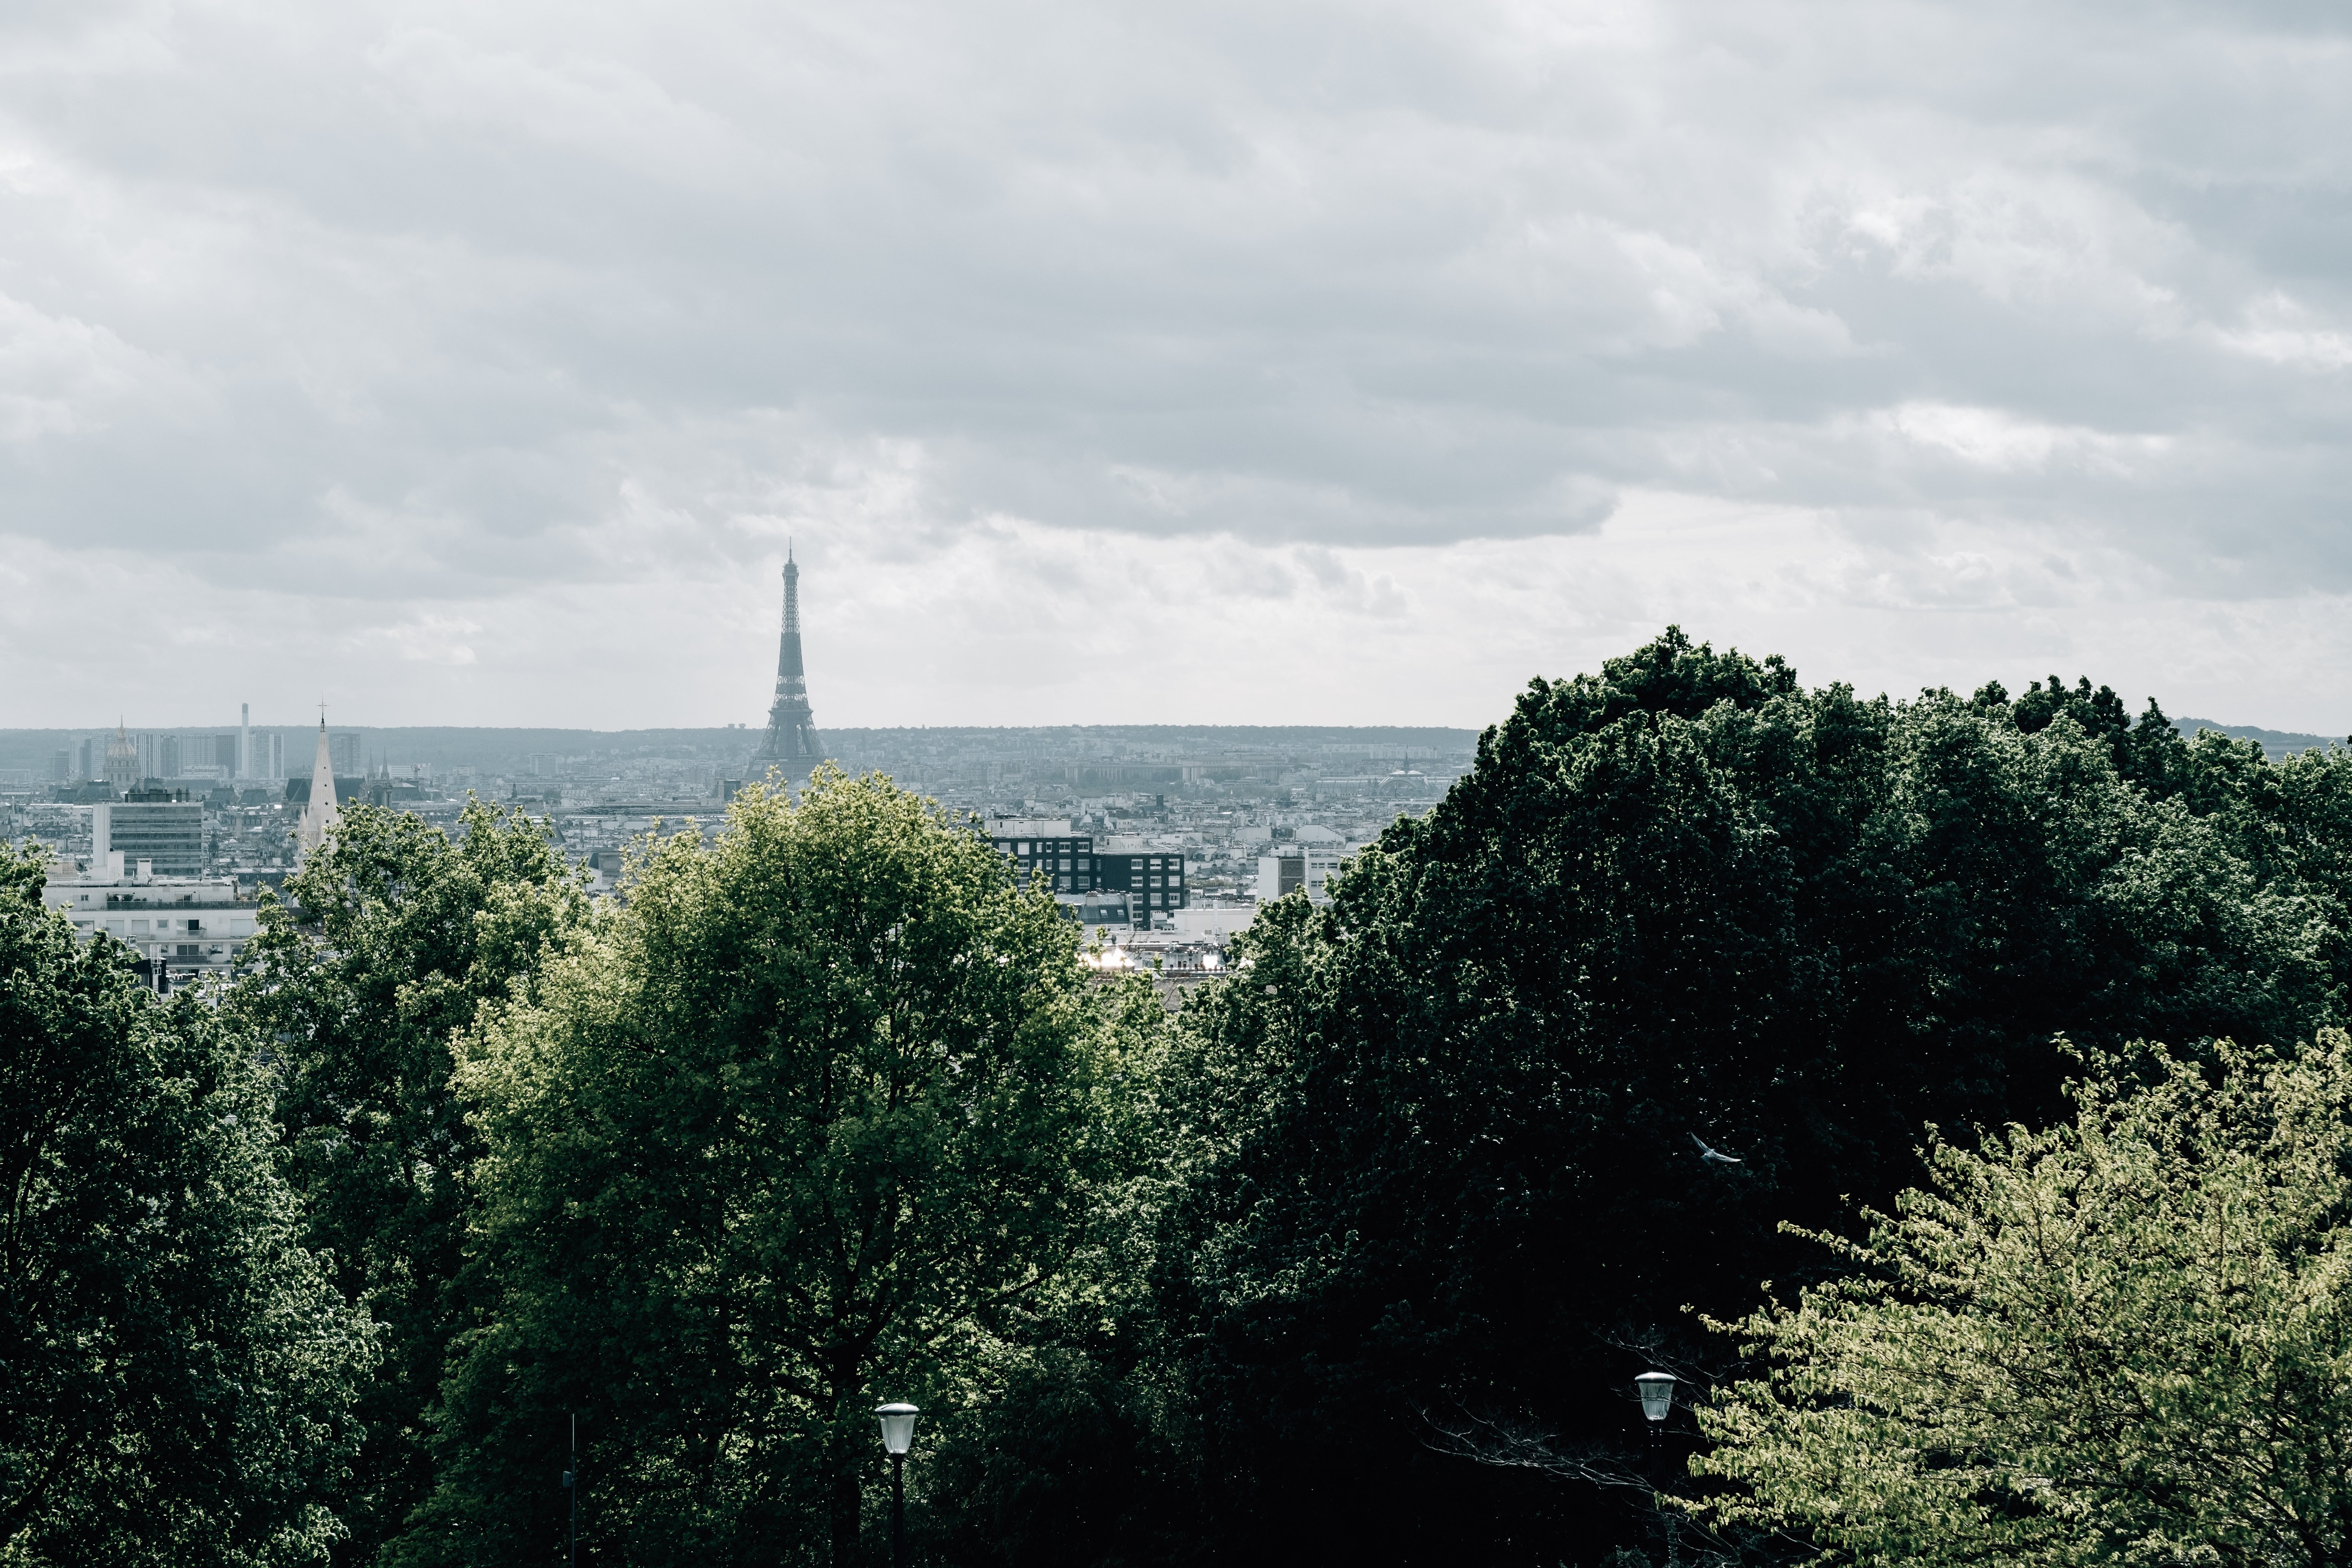 地平線上のエッフェル塔とパリのスカイライン写真 